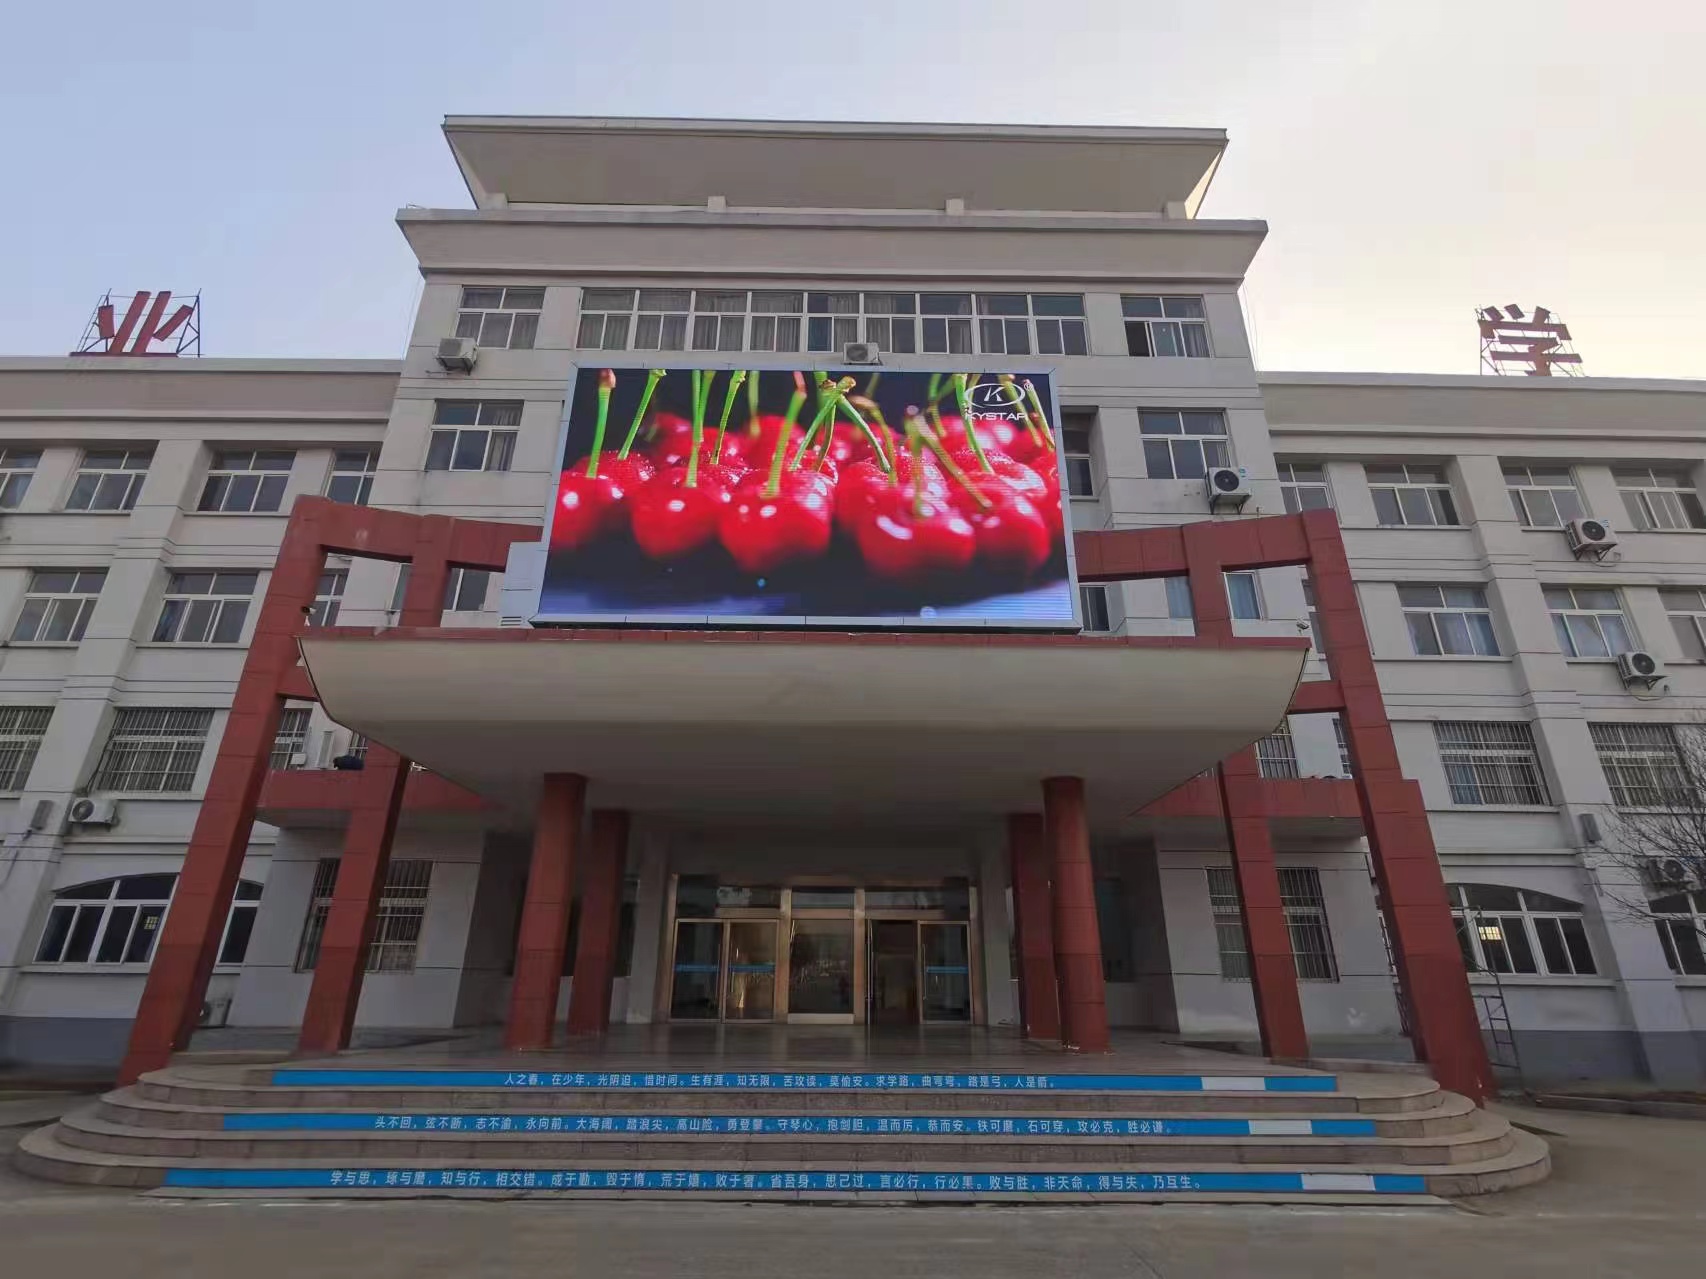 徐州市经济开发区工业学校K5显示屏安装案例